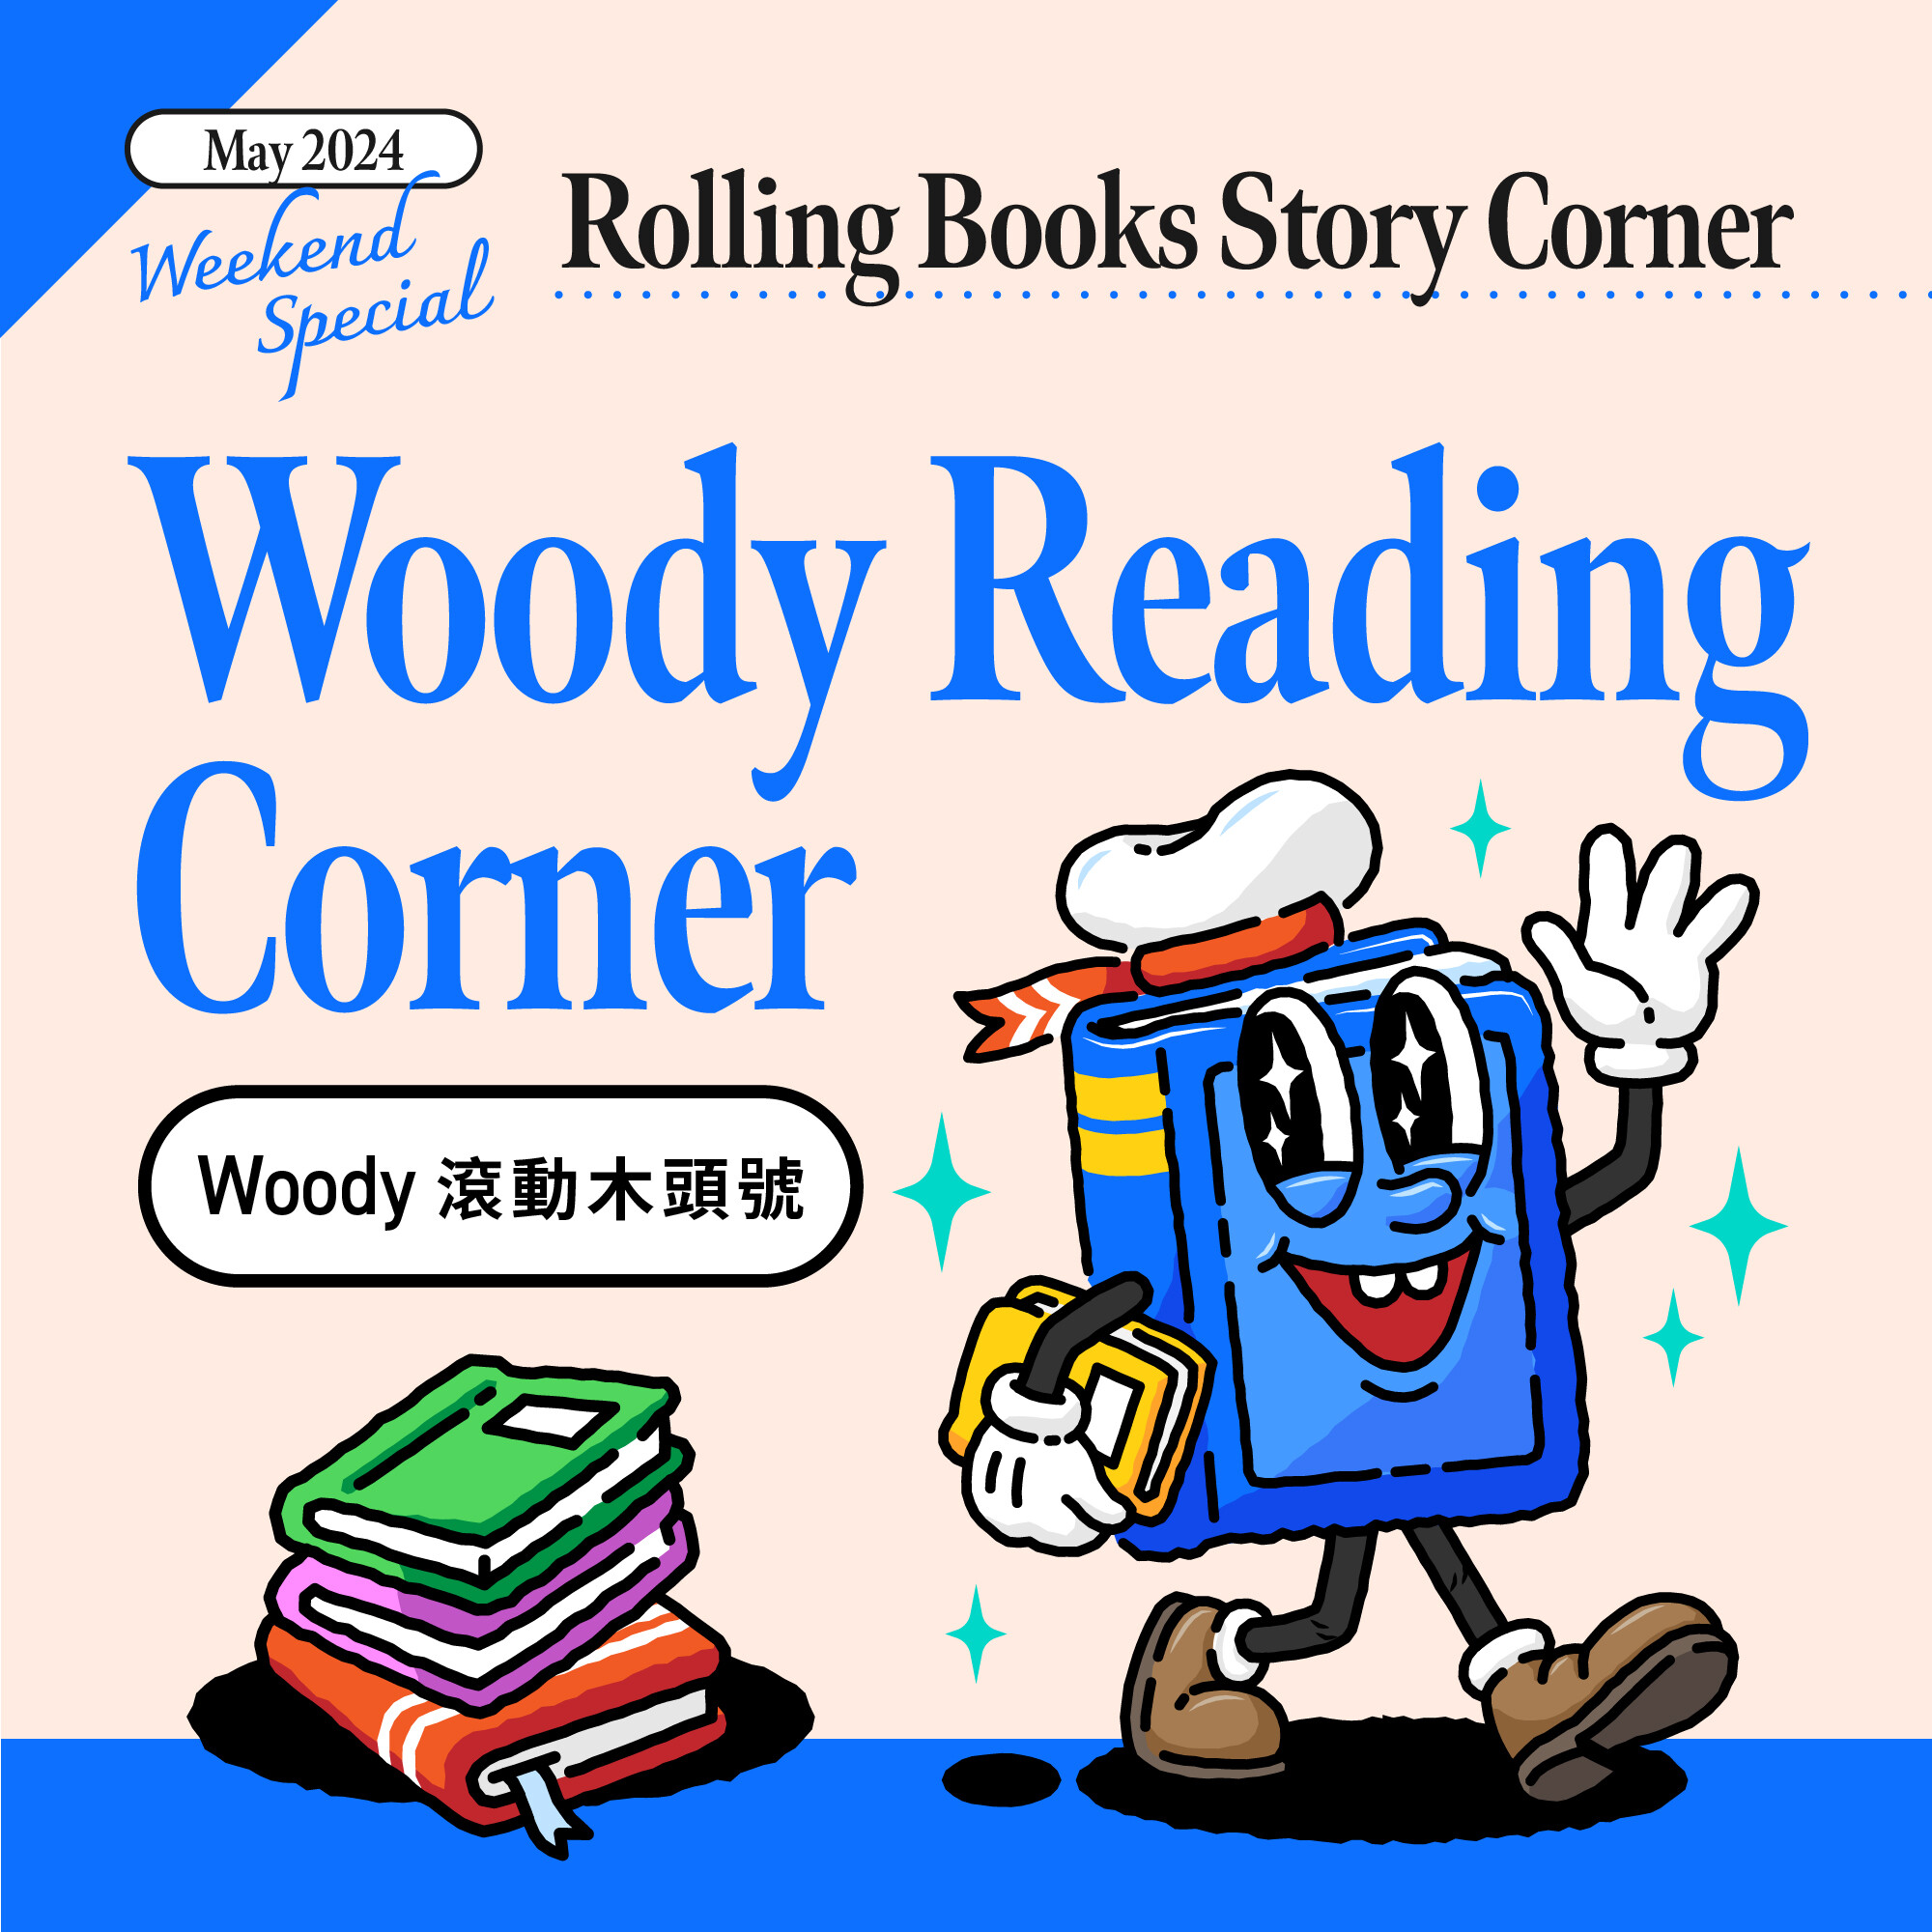 Woody Reading Corner